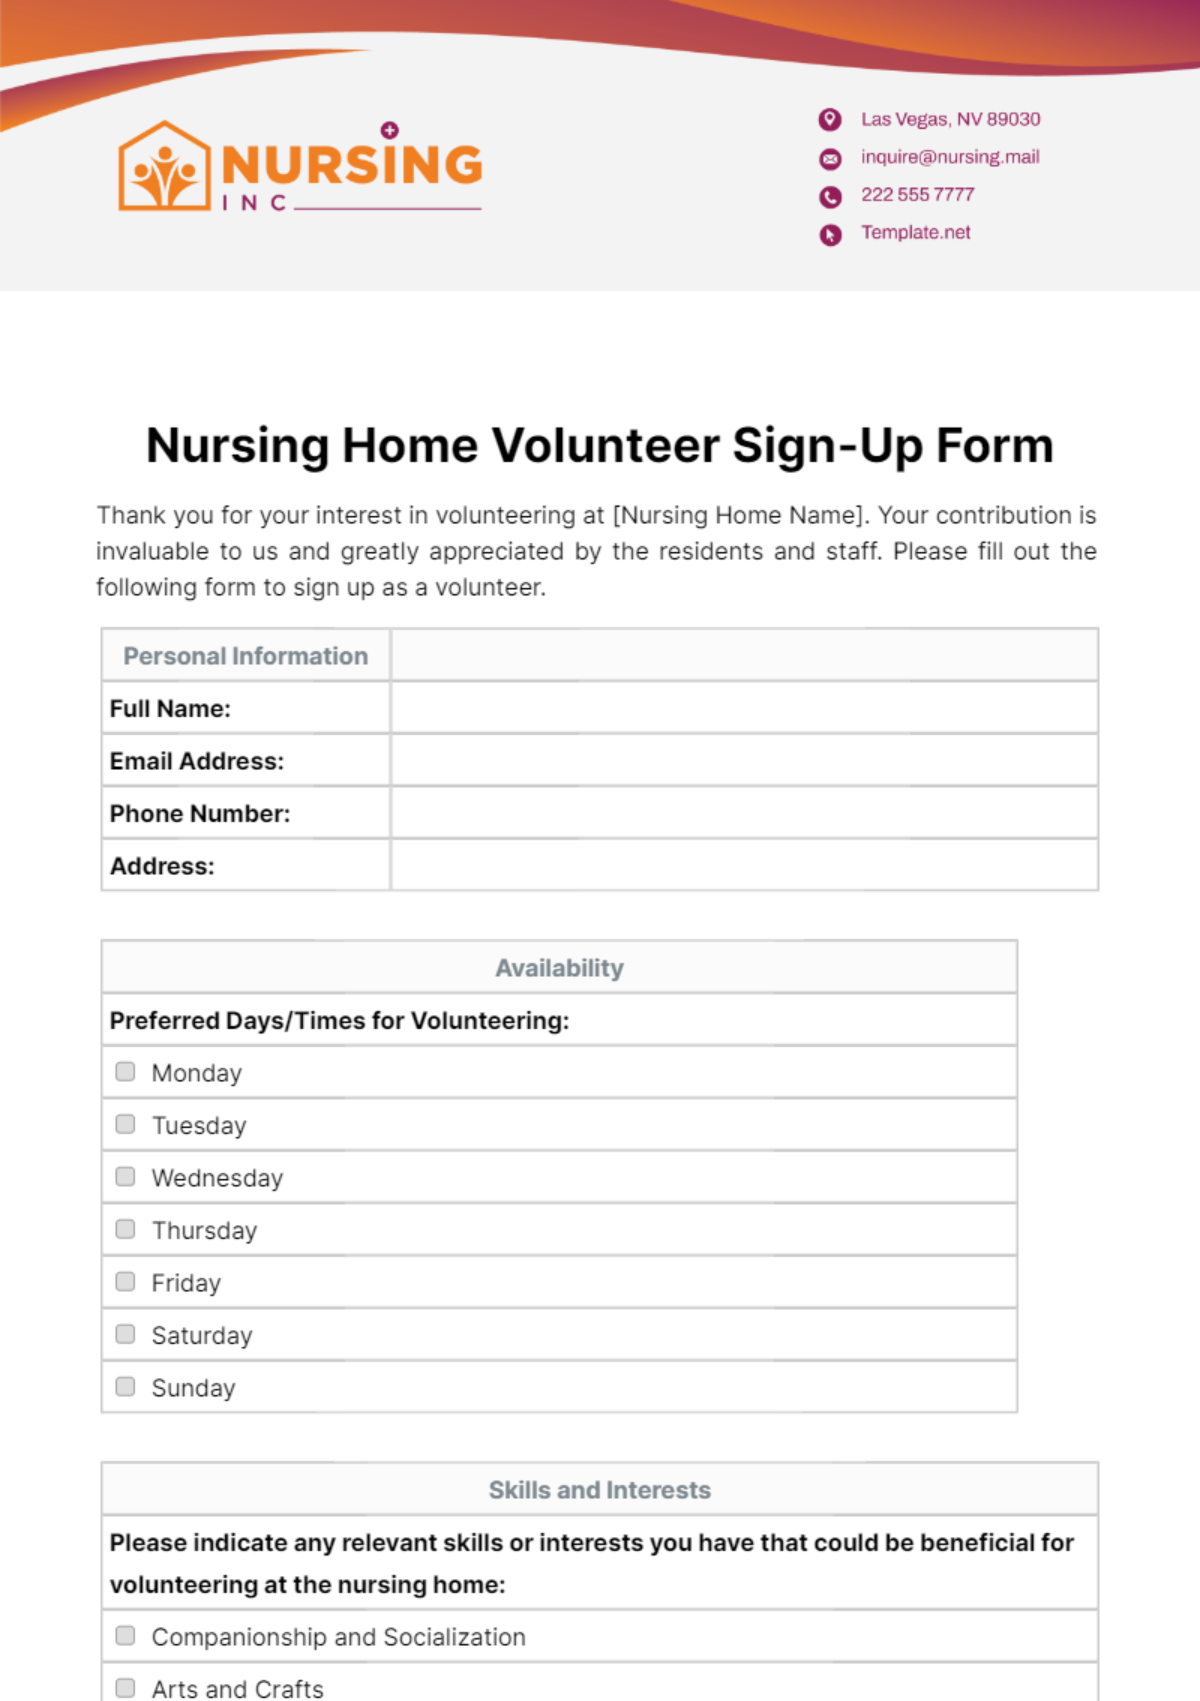 Free Nursing Home Volunteer Sign-Up Form Template